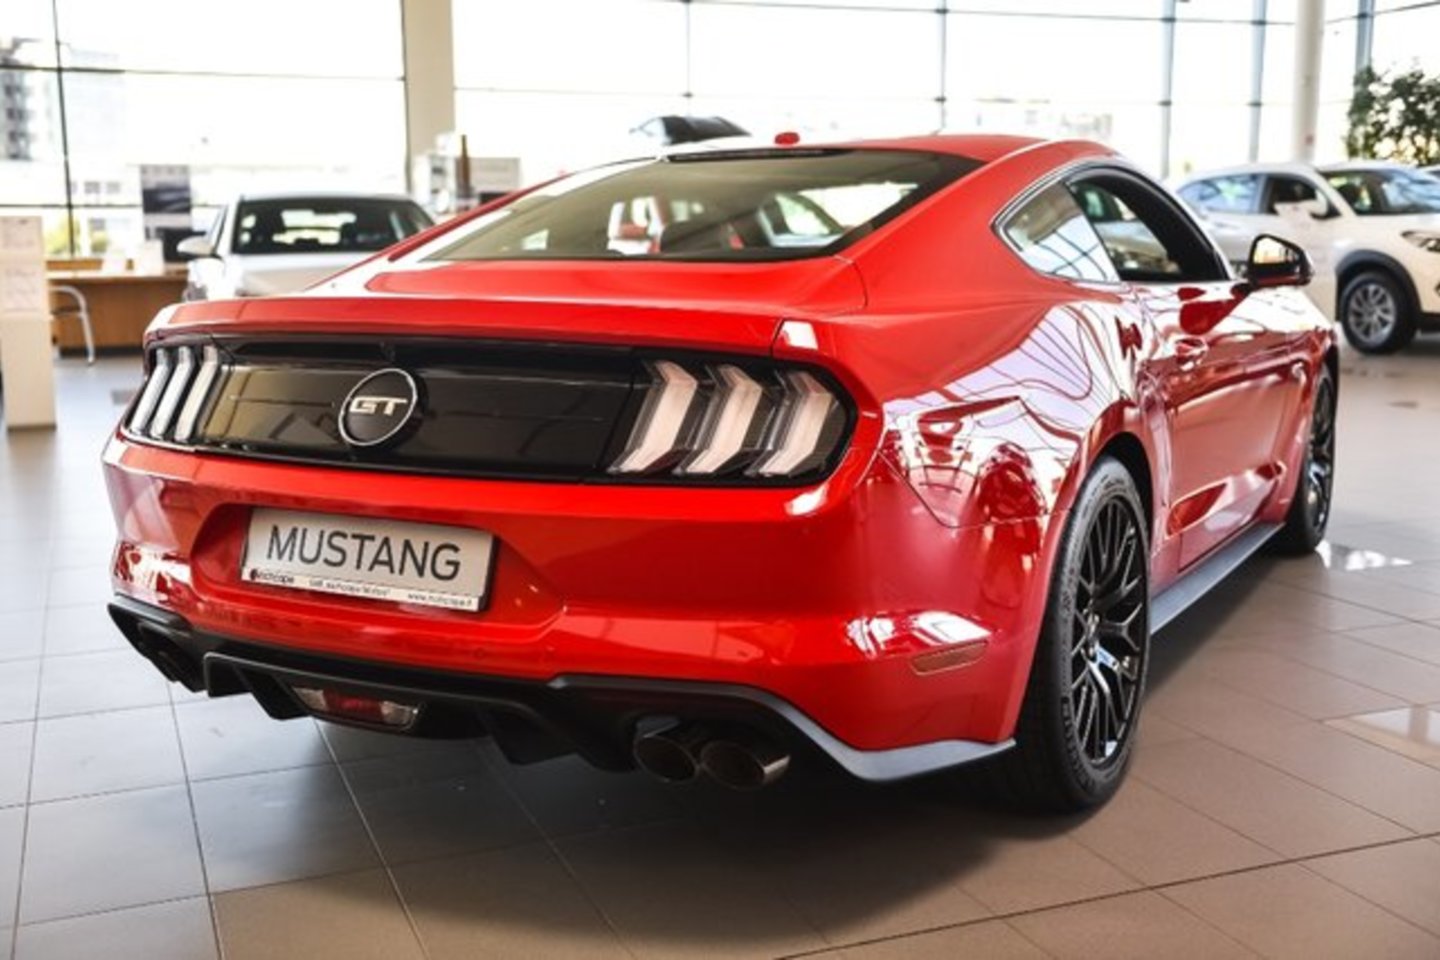  Atnaujintam „Ford Mustang“ modeliui siūloma 10 laipsnių automatinė transmisija.<br>Vytauto Pilkausko nuotr.